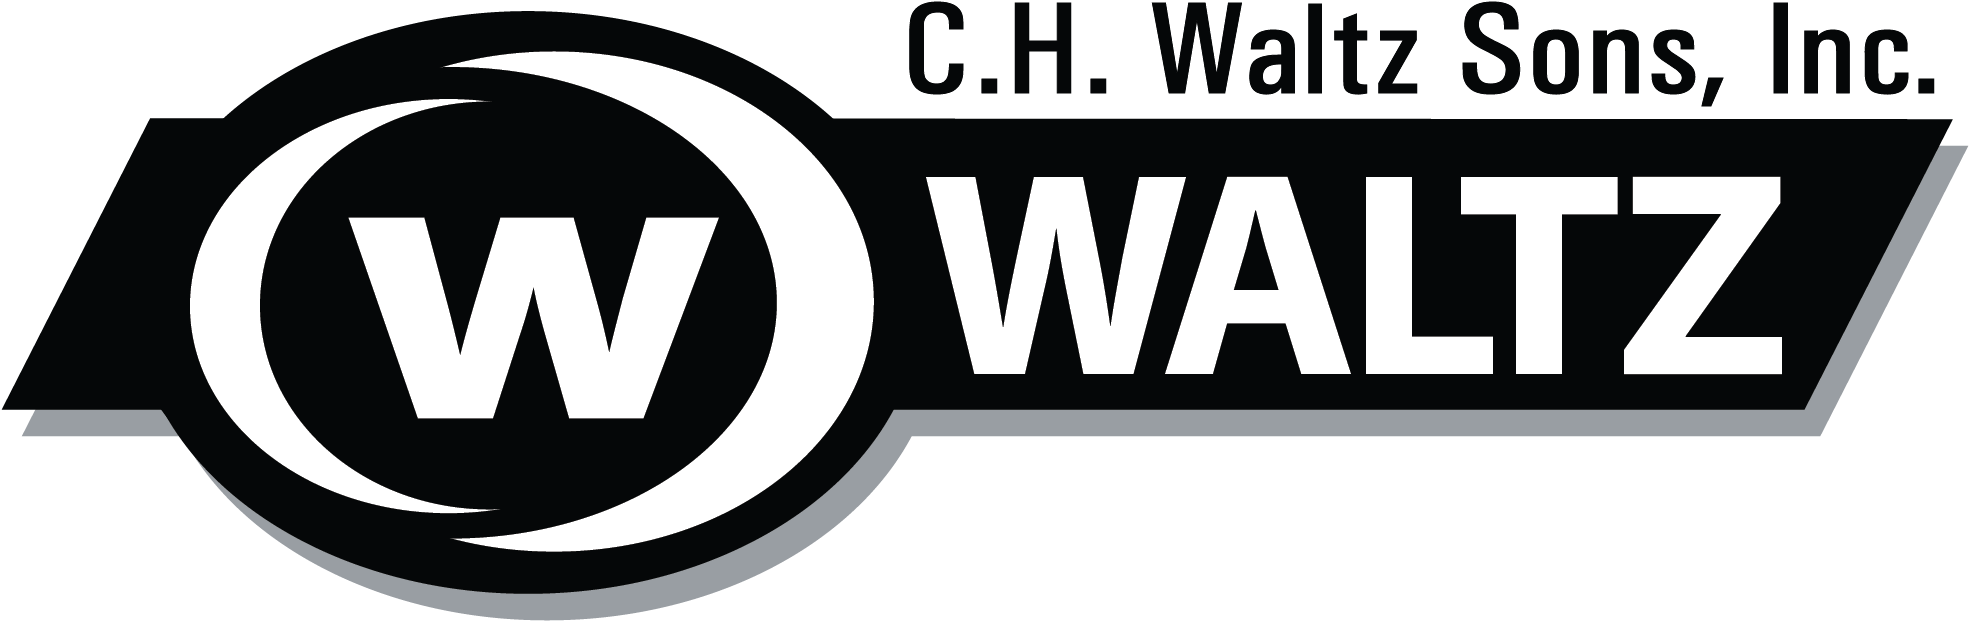 Chw Logo 1 - Fête De La Musique Clipart (1968x638), Png Download